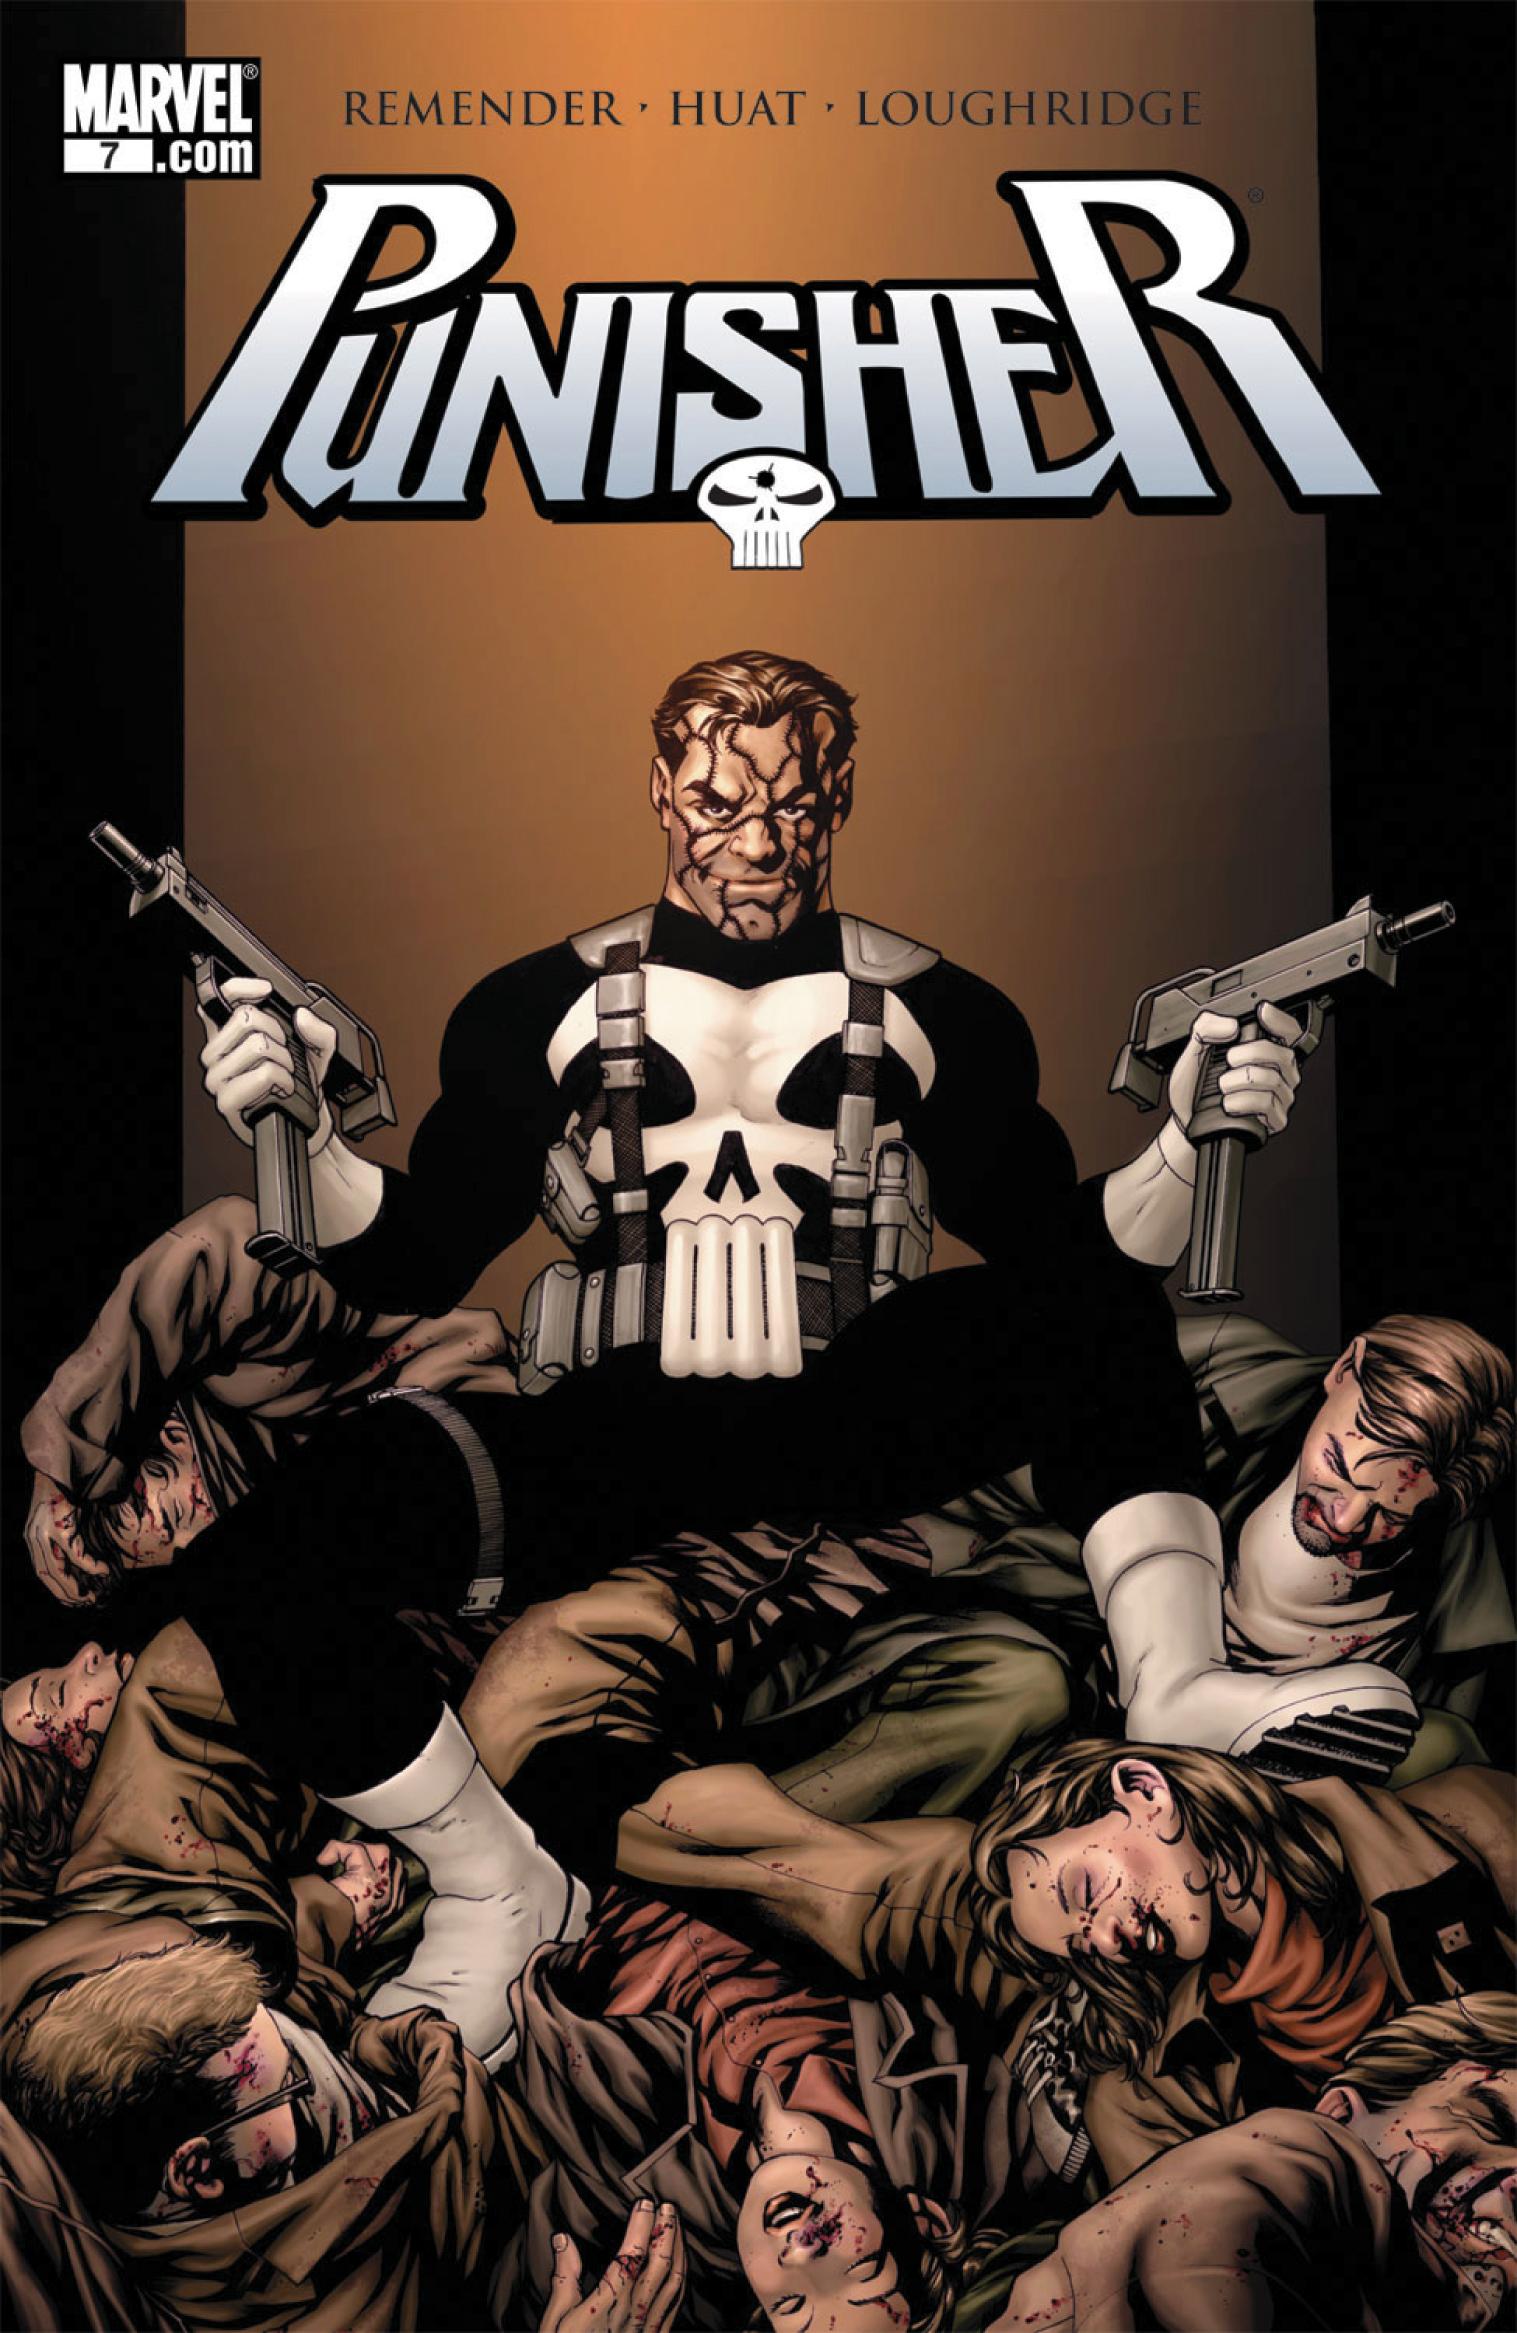 Punisher Vol. 7 #7